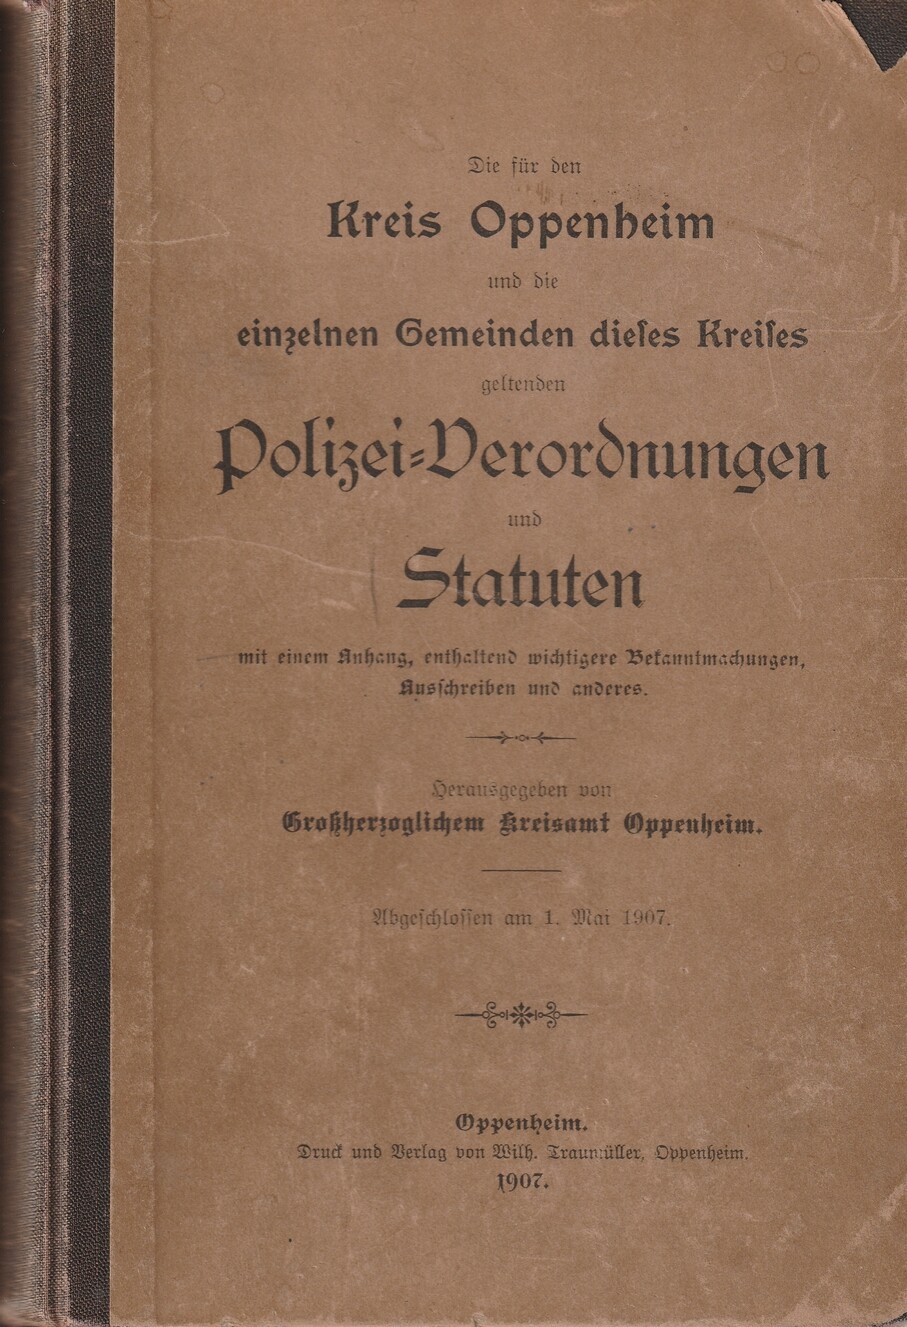 Kreis Oppenheim, Polizei-Verordungen und Statuten (Kulturverein Guntersblum CC BY-NC-SA)